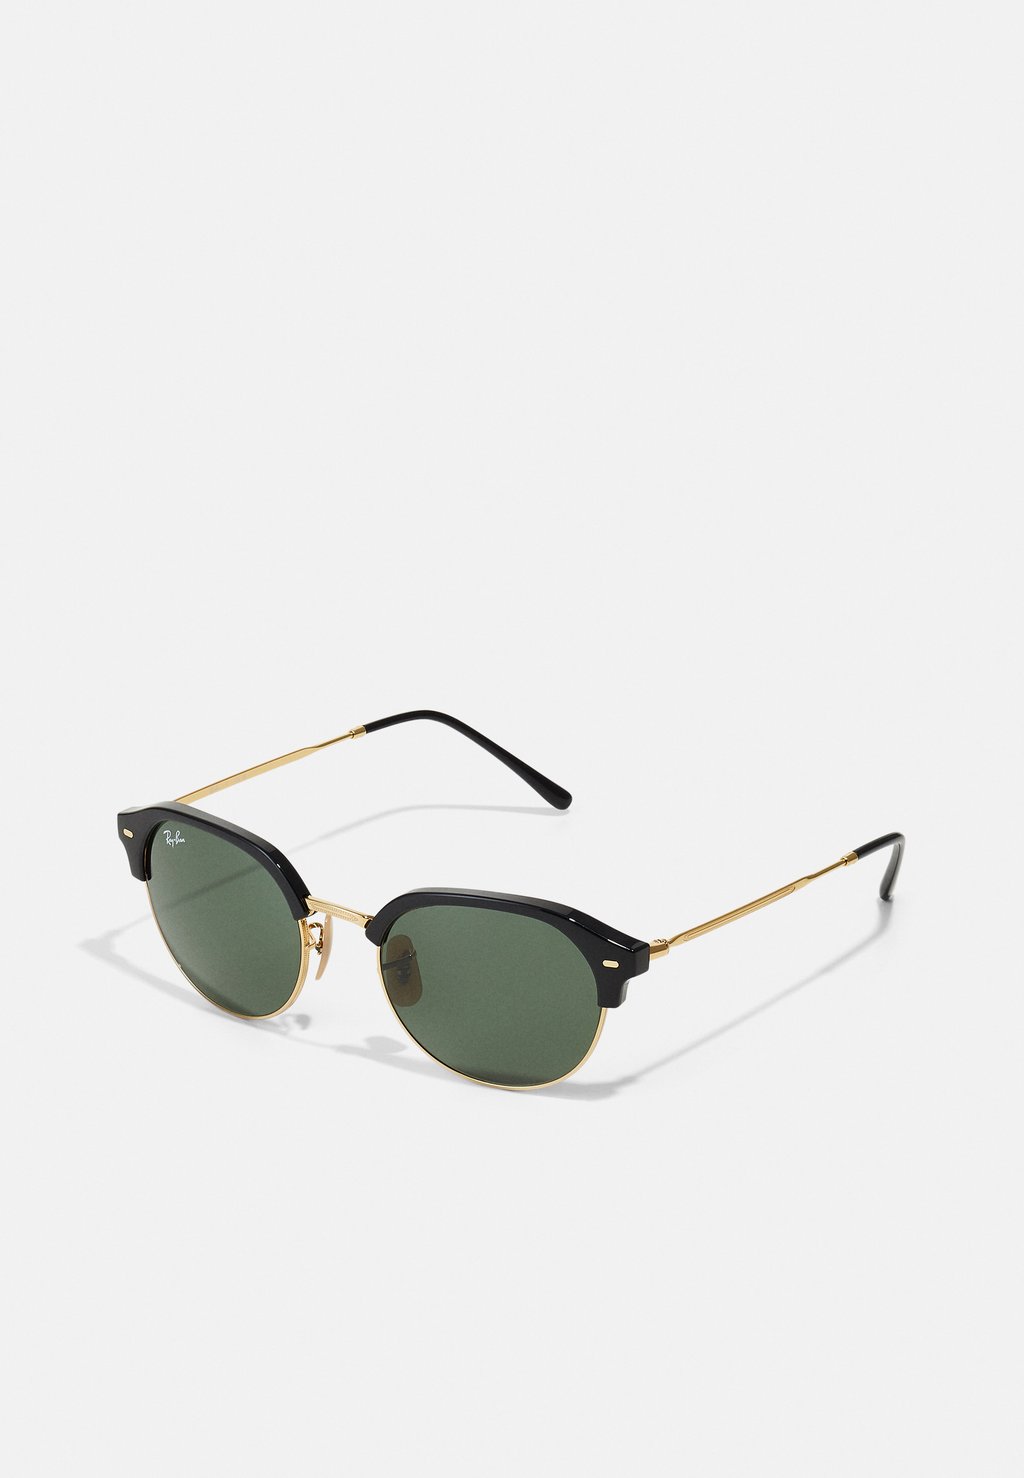 Солнцезащитные очки Unisex Ray-Ban, цвет black on arista